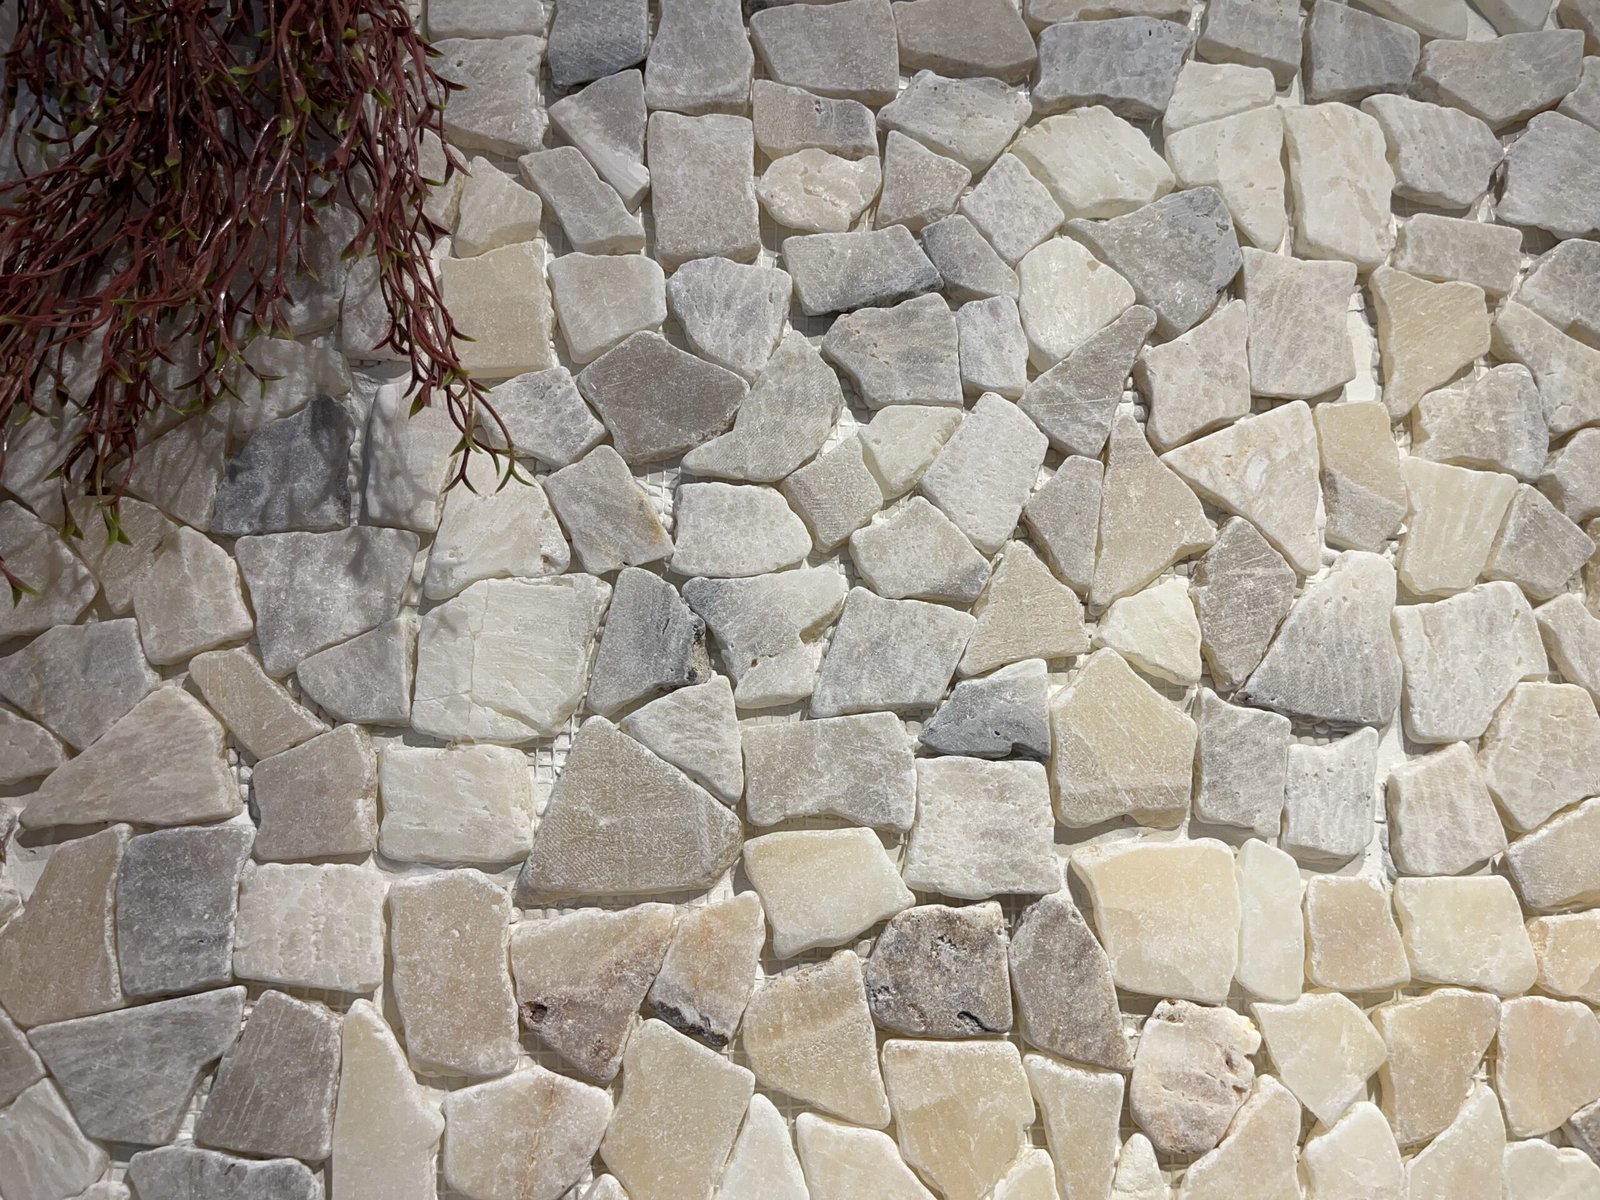 Muros de pedra: o rústico e o moderno em um só produto